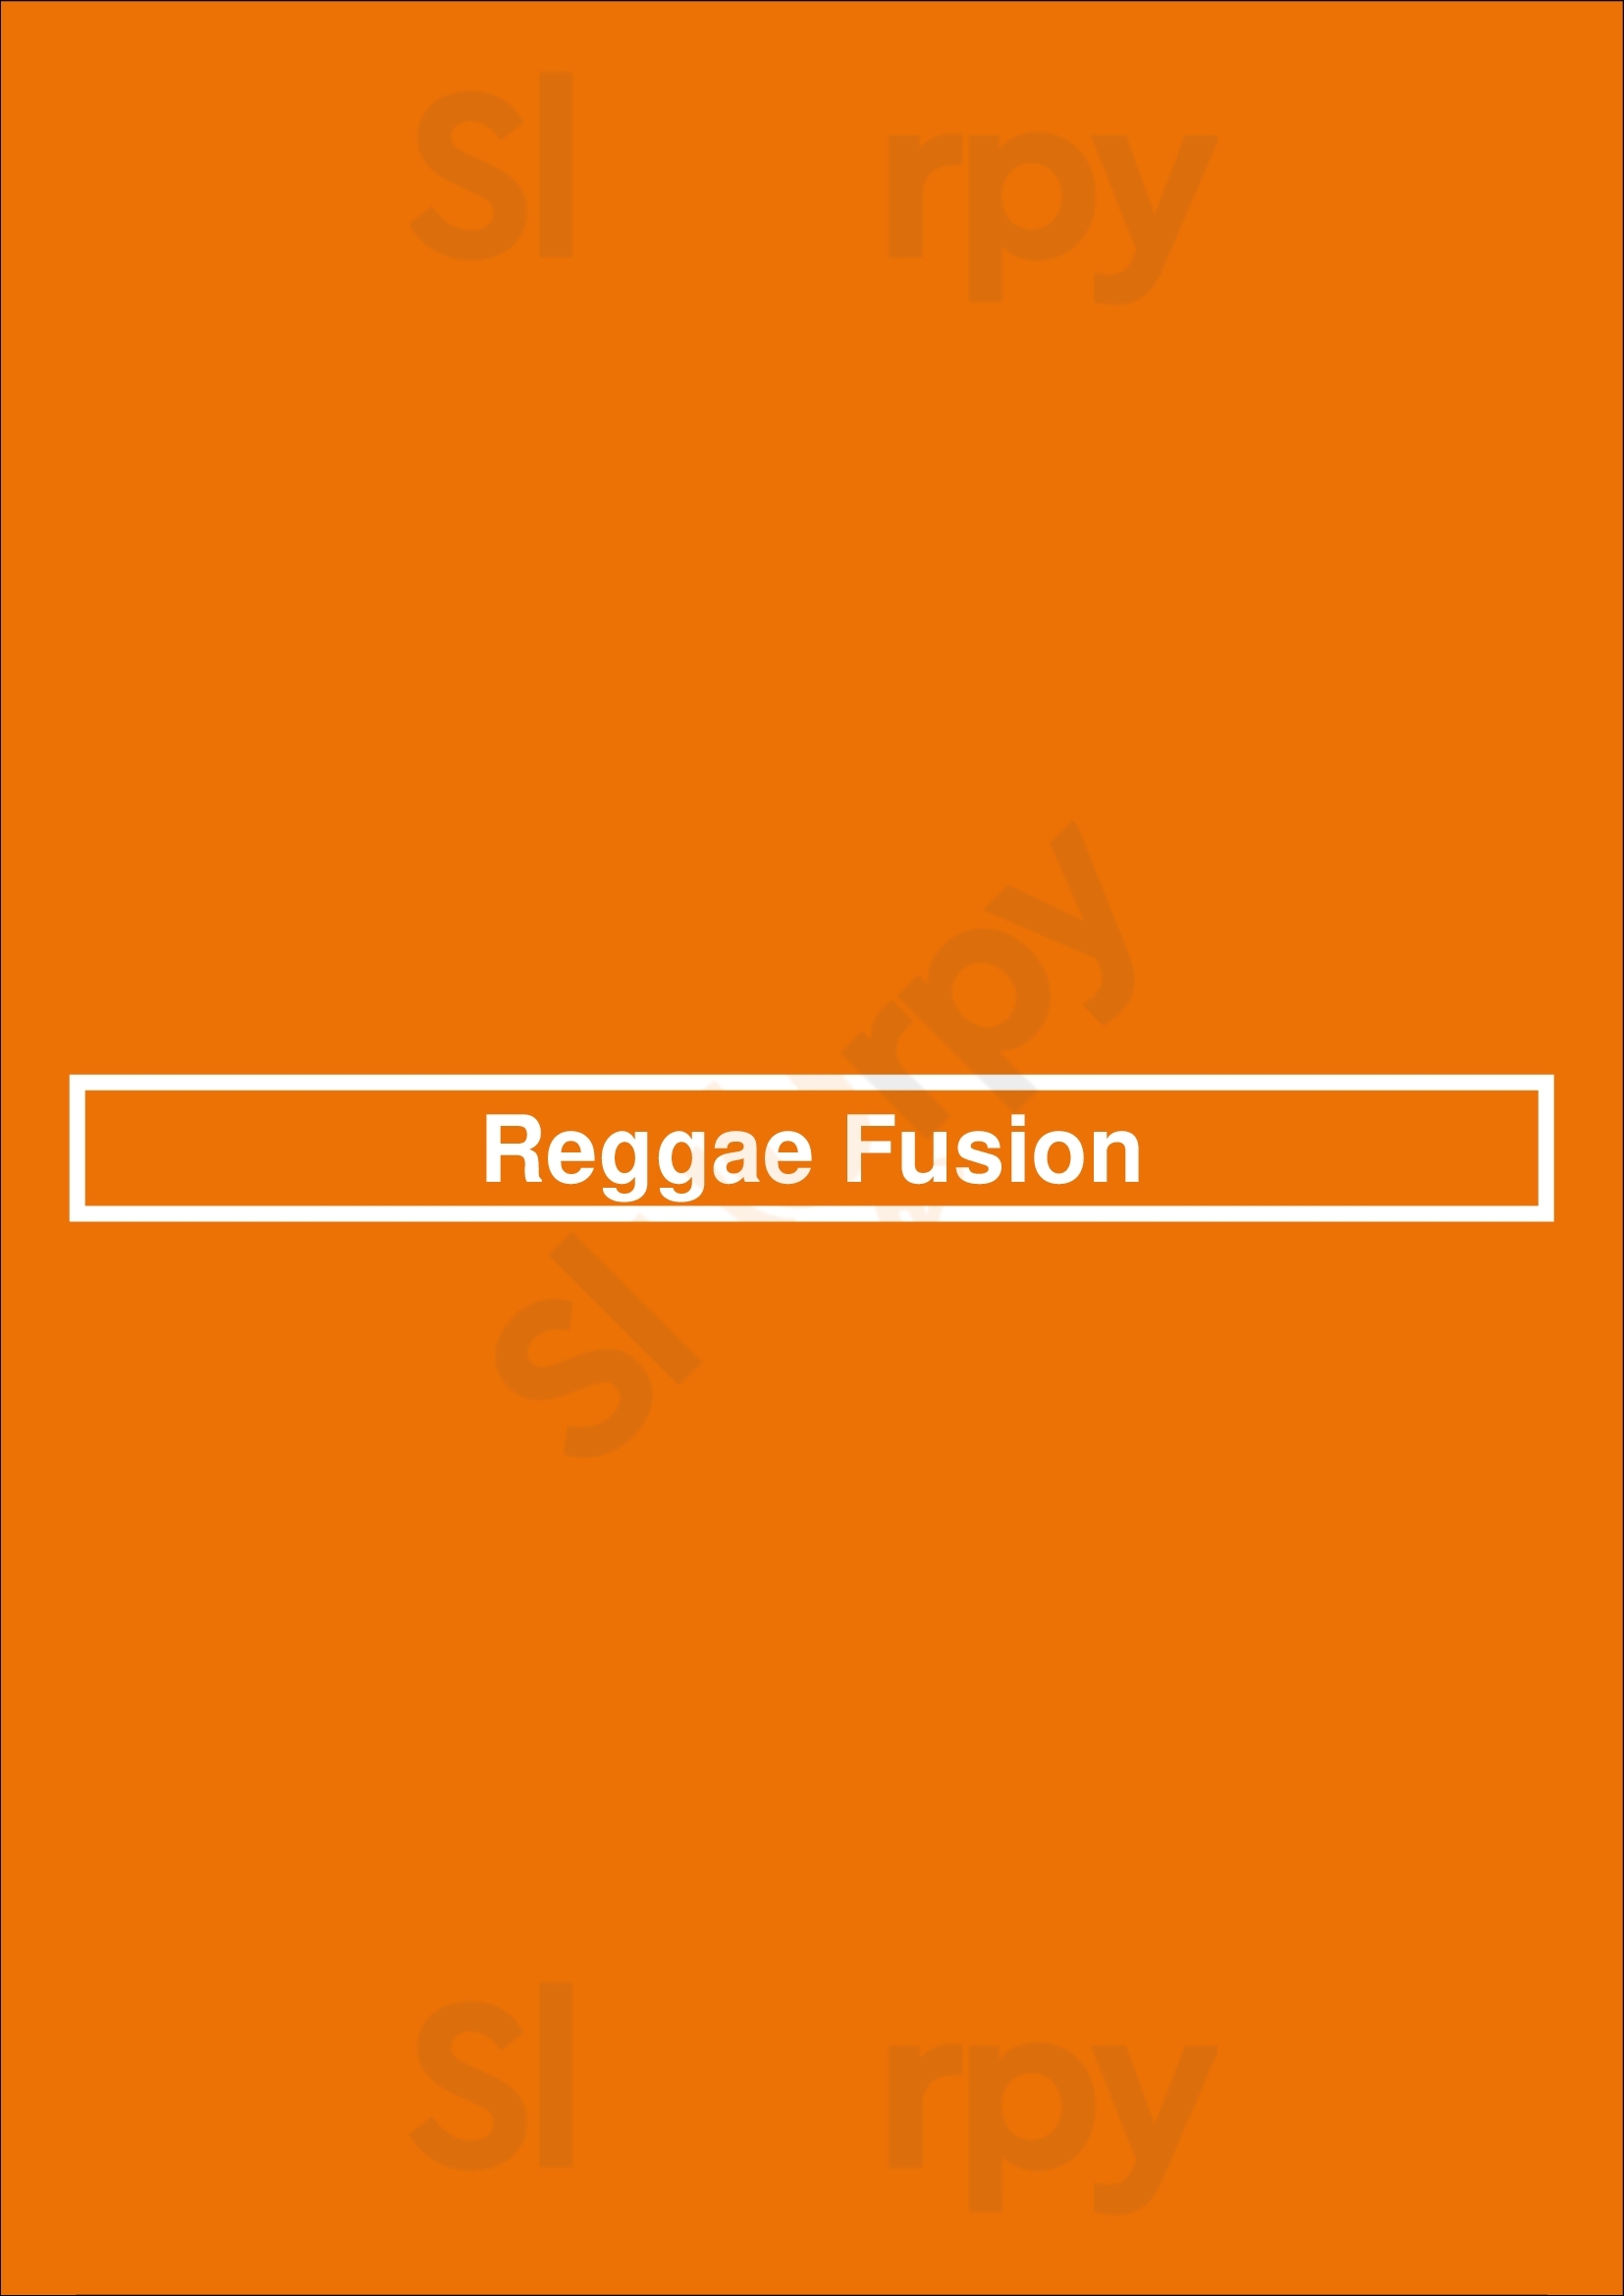 Reggae Fusion Mississauga Menu - 1